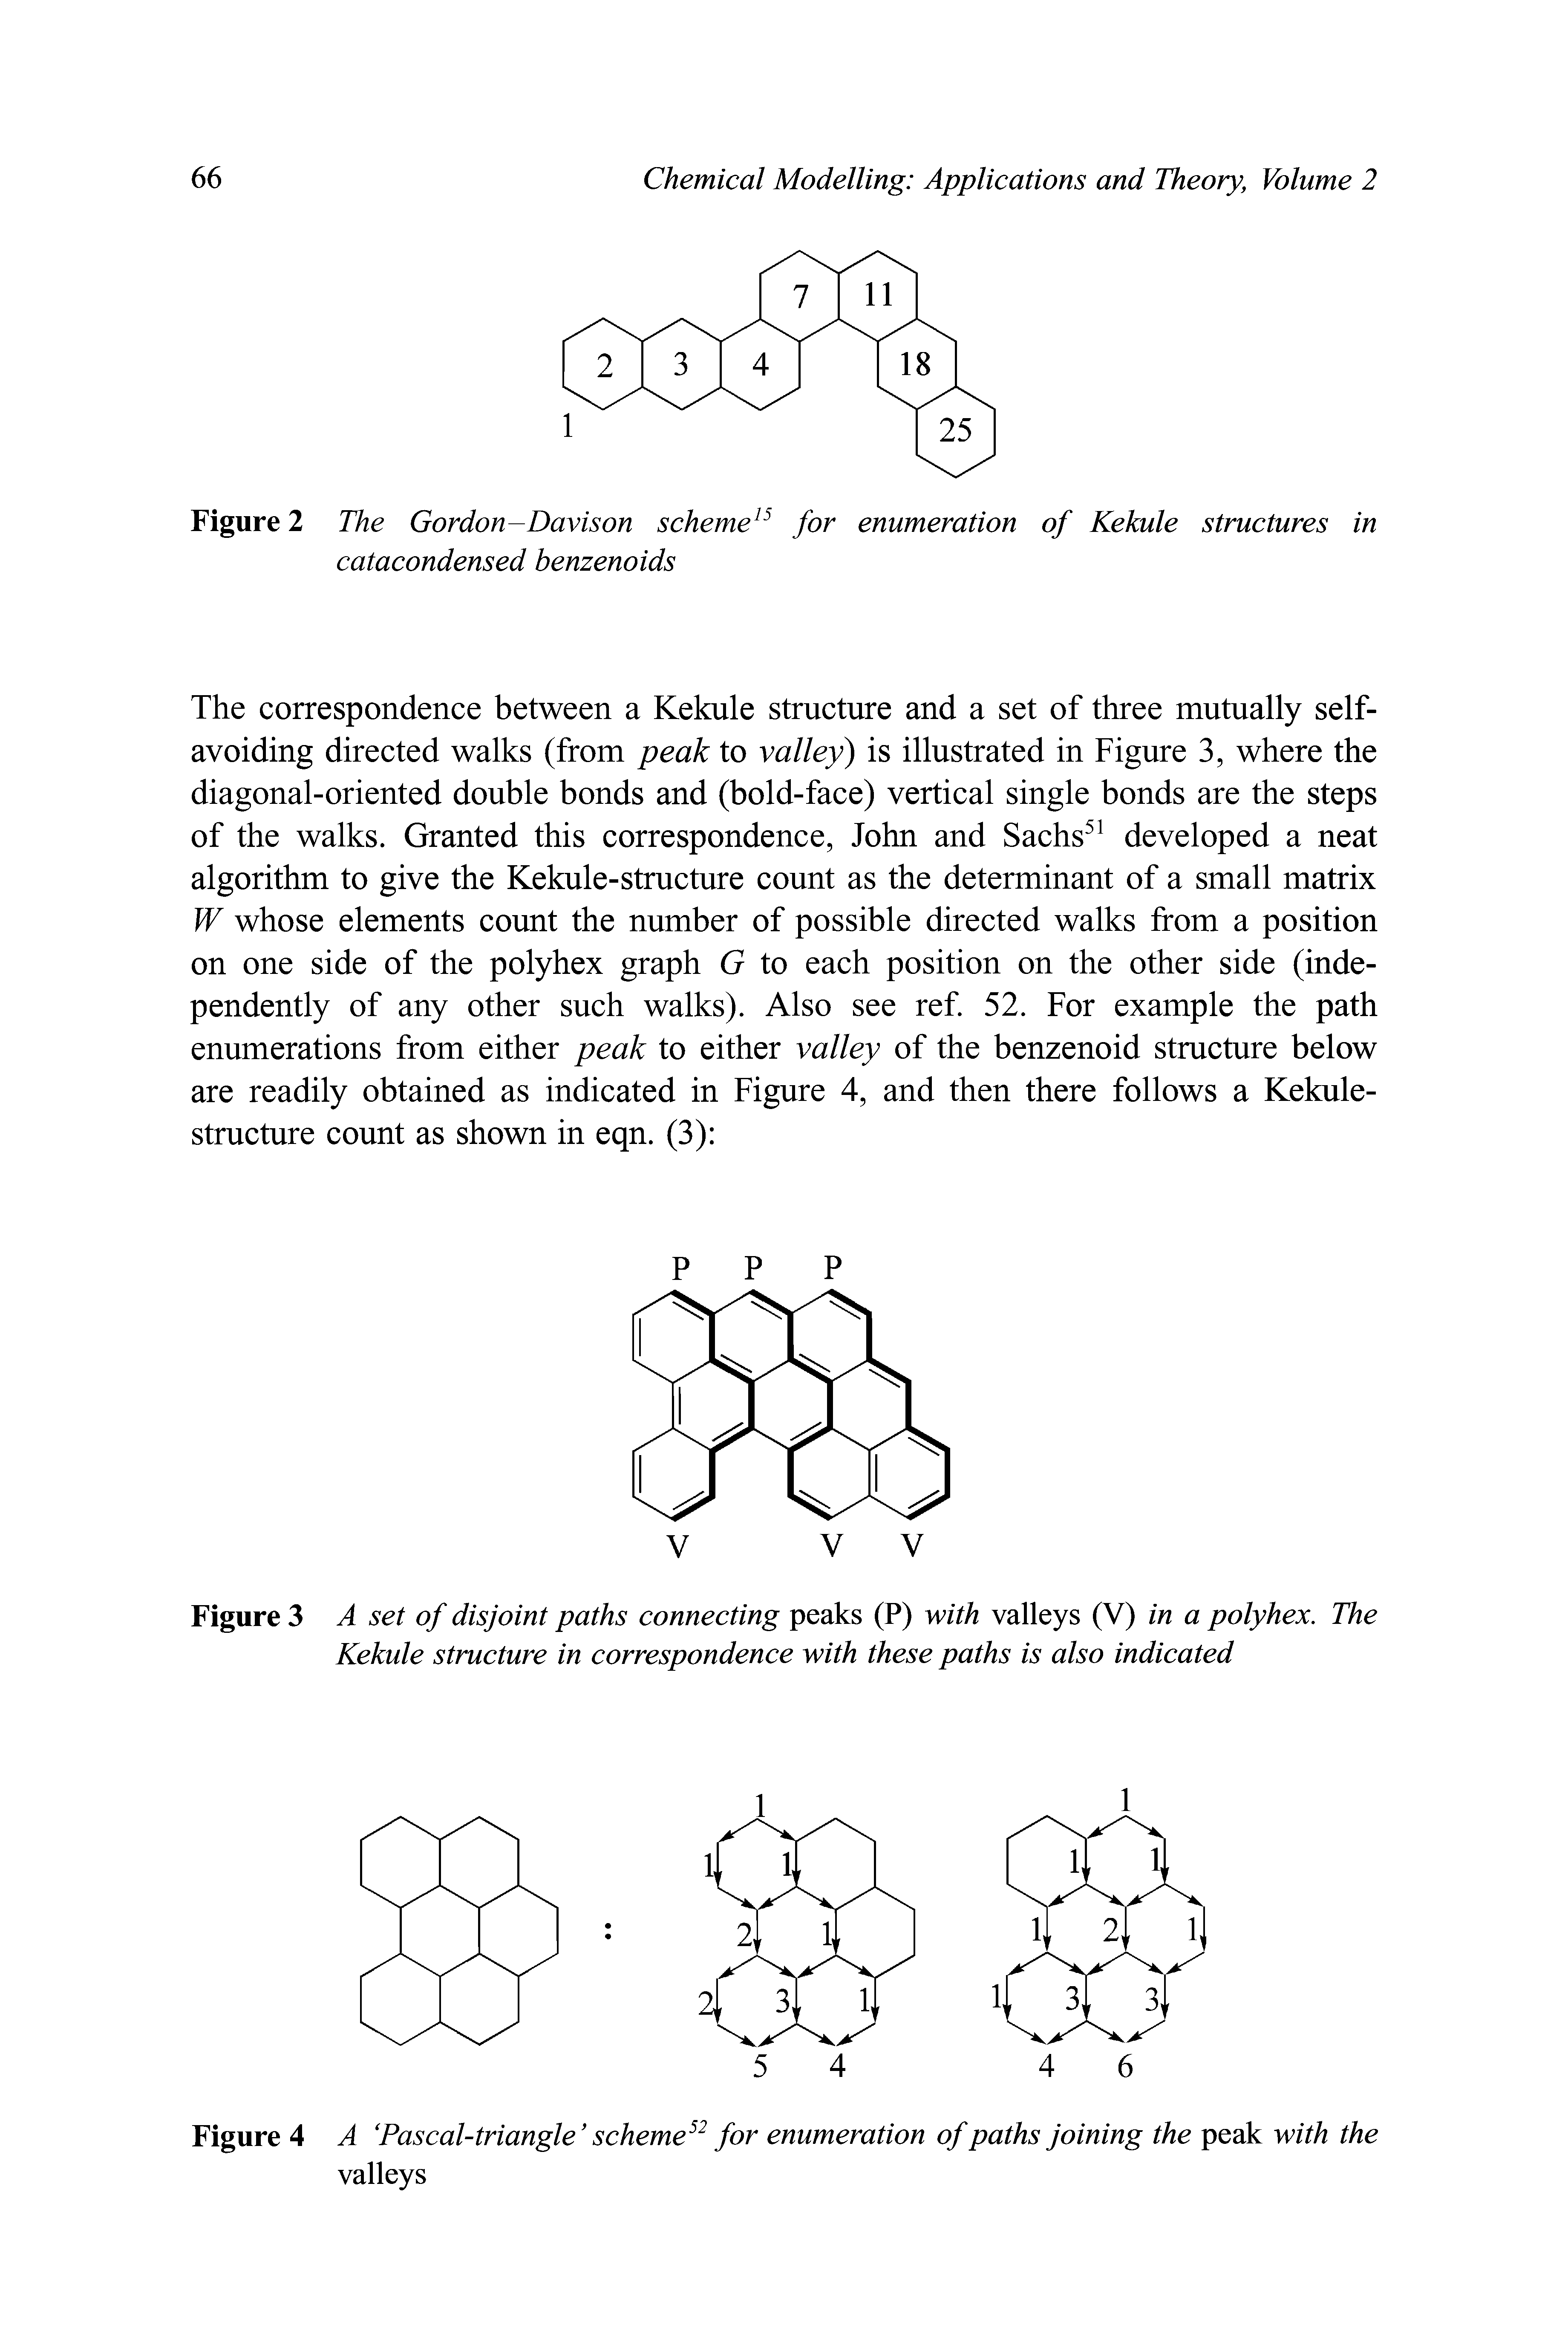 Figure 2 The Gordon-Davison scheme for enumeration of Kekule structures in catacondensed benzenoids...